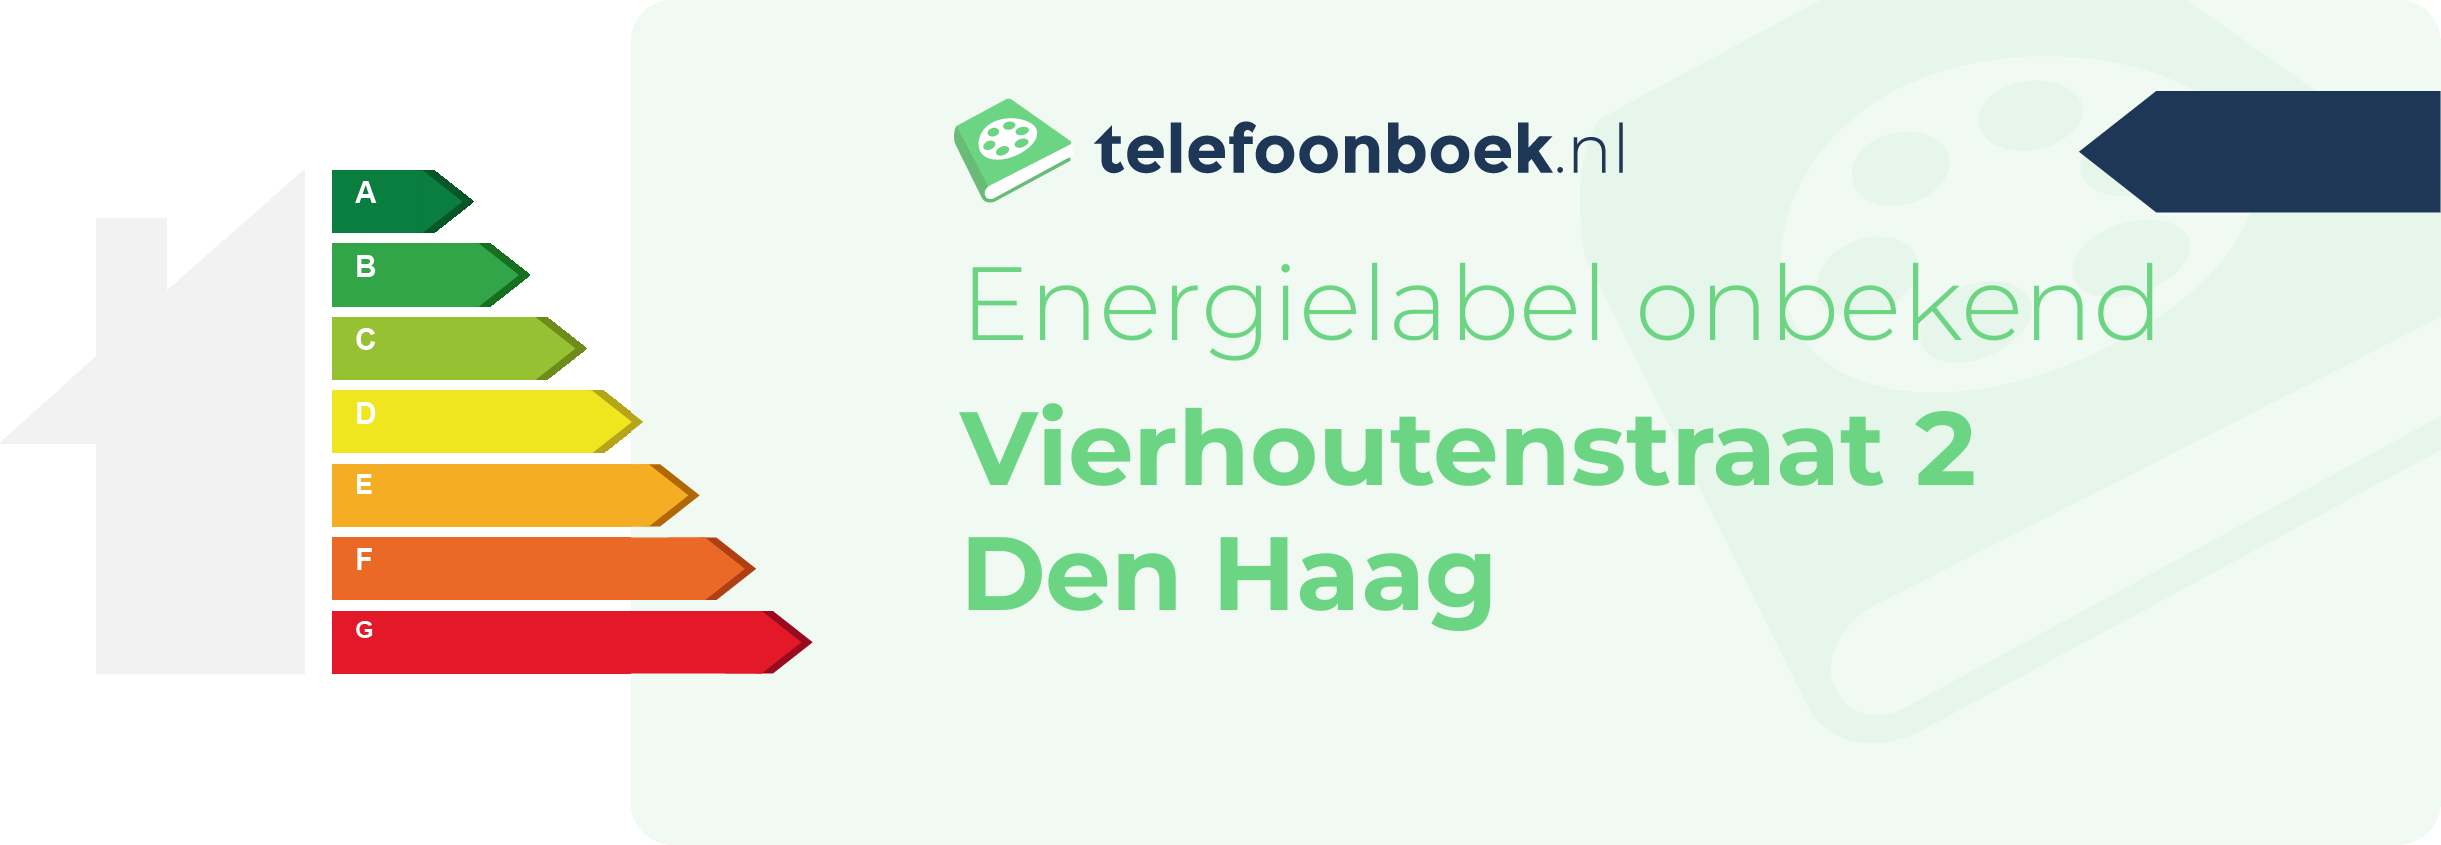 Energielabel Vierhoutenstraat 2 Den Haag